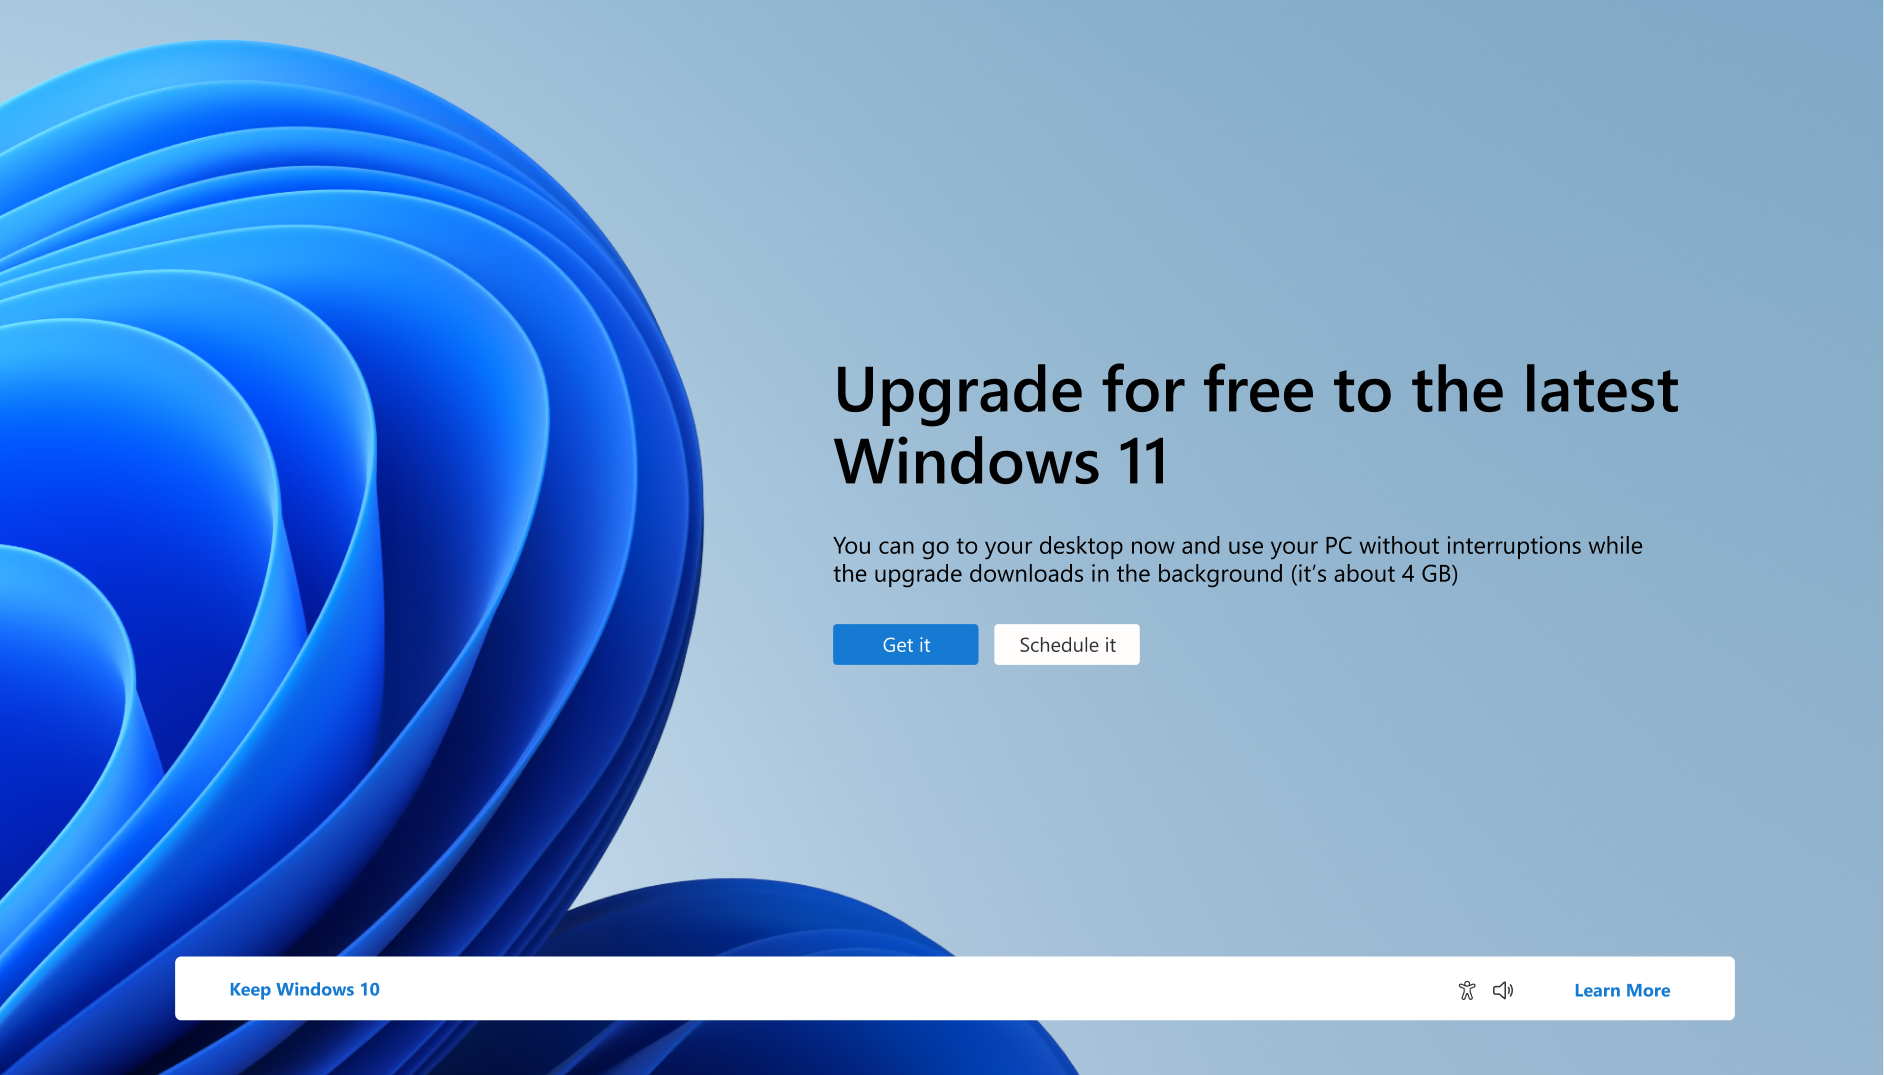 צילום מסך של ההודעה המציינת שהמחשב יכול לשדרג ללא תשלום Windows 11.